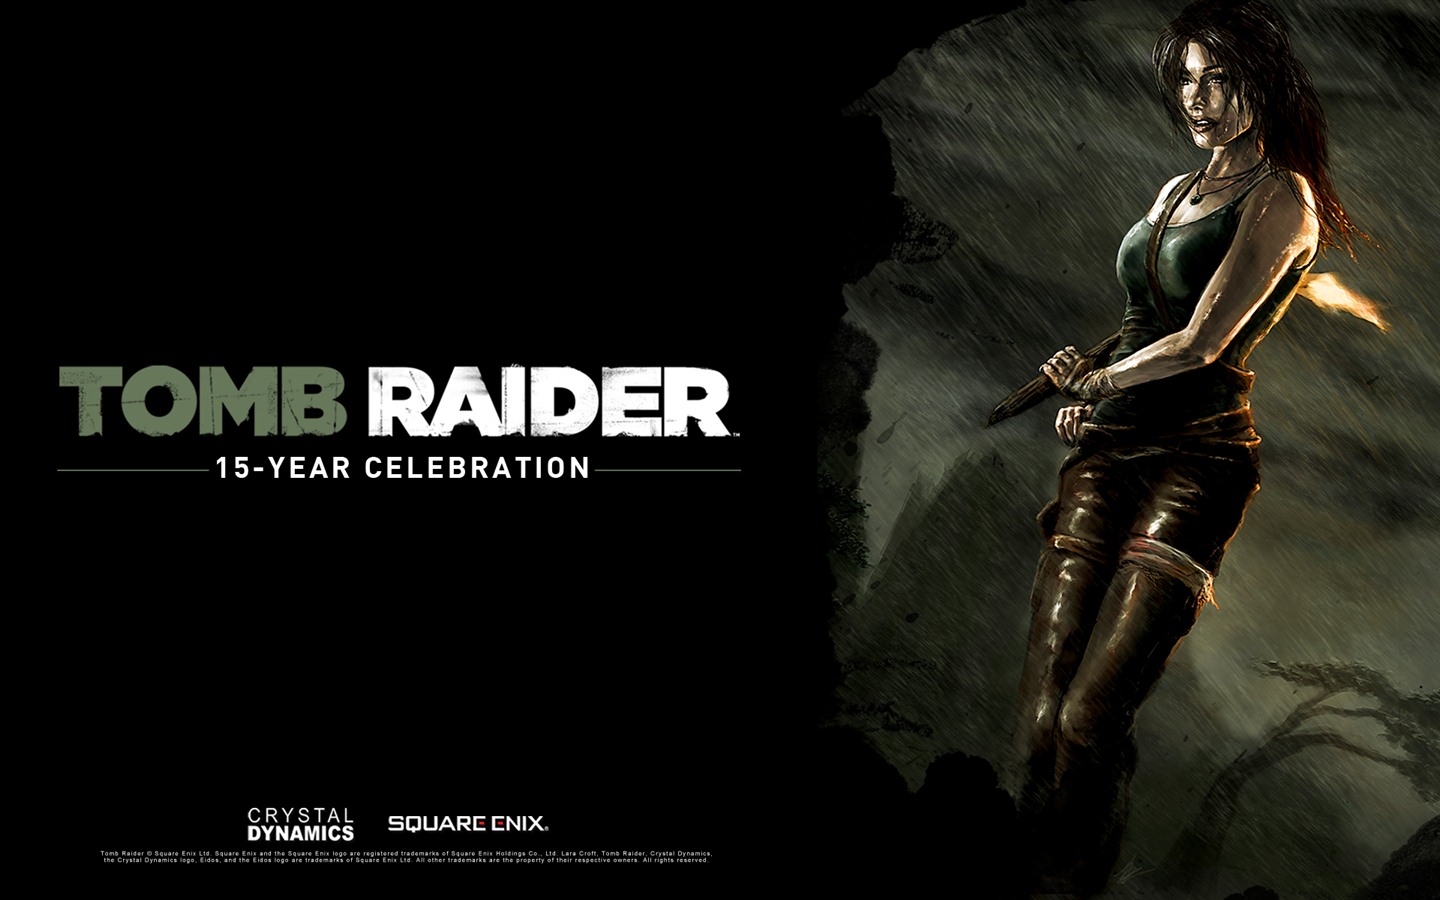 Tomb Raider 15-Year Celebration 古墓丽影15周年纪念版 高清壁纸2 - 1440x900